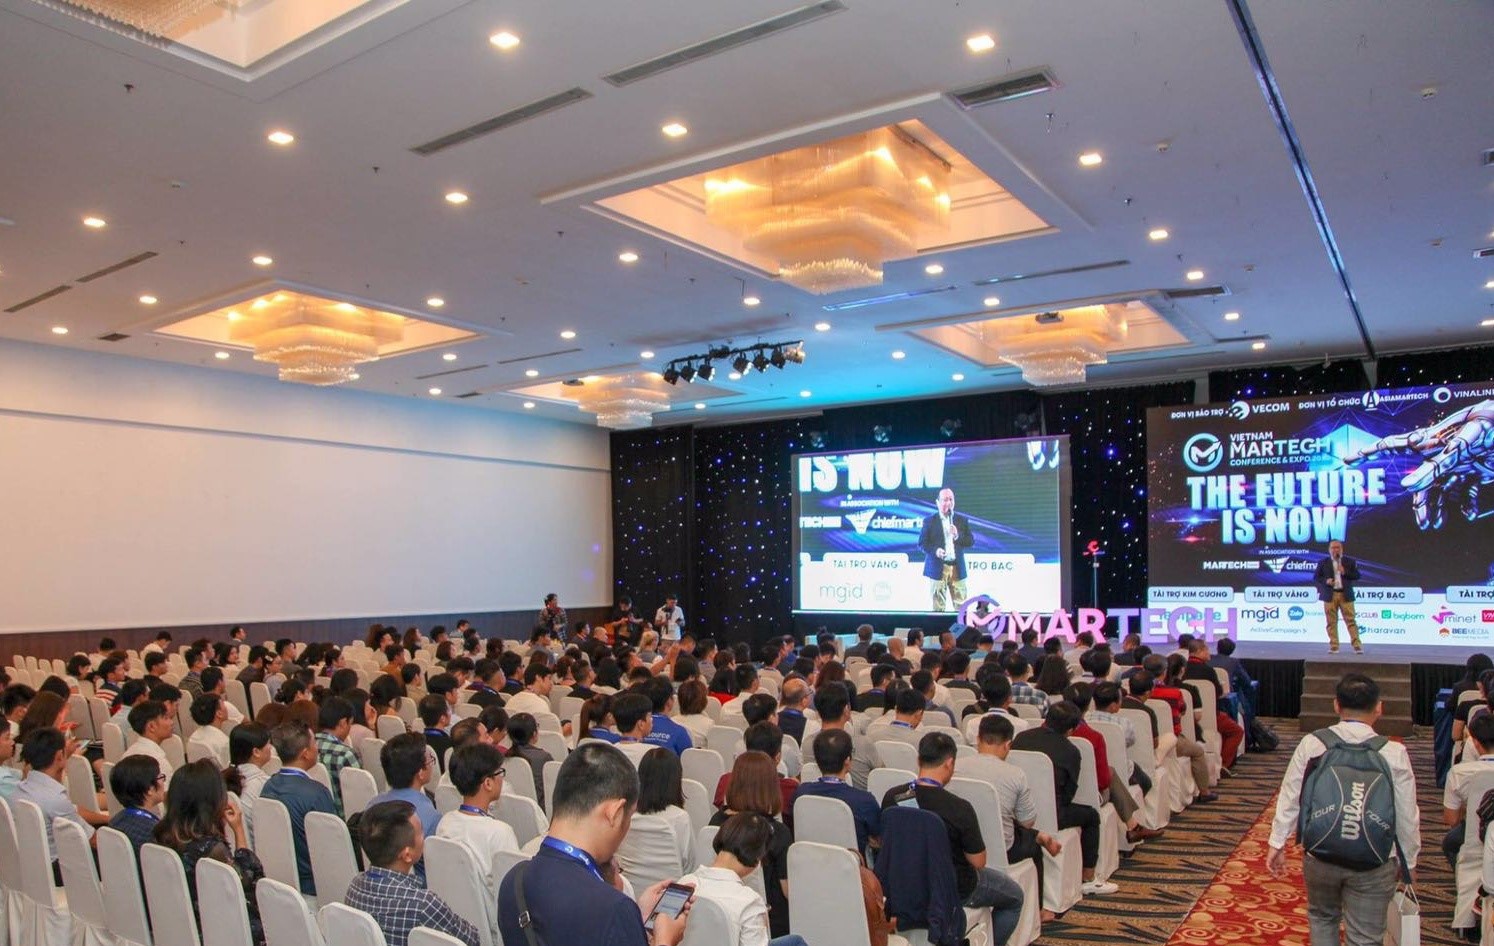 VN Ngày Nay đồng hành cùng “Vietnam MarTech Conference & Expo 2019” đưa xu hướng công nghệ mới nhất thế giới tiếp cận doanh nghiệp Việt